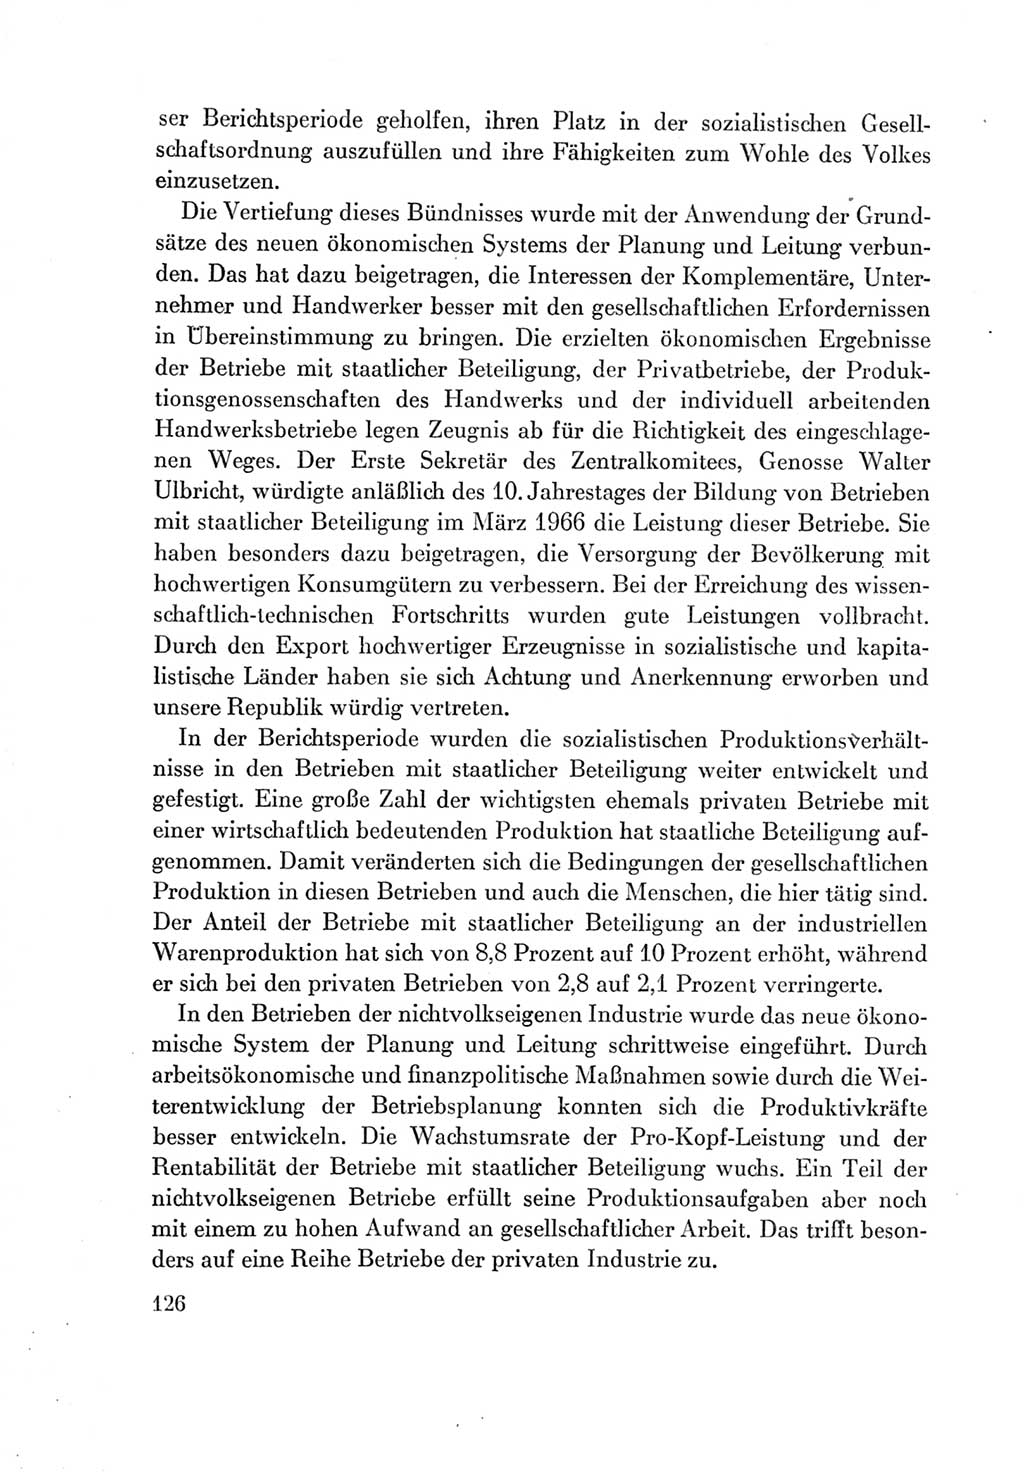 Protokoll der Verhandlungen des Ⅶ. Parteitages der Sozialistischen Einheitspartei Deutschlands (SED) [Deutsche Demokratische Republik (DDR)] 1967, Band Ⅳ, Seite 126 (Prot. Verh. Ⅶ. PT SED DDR 1967, Bd. Ⅳ, S. 126)